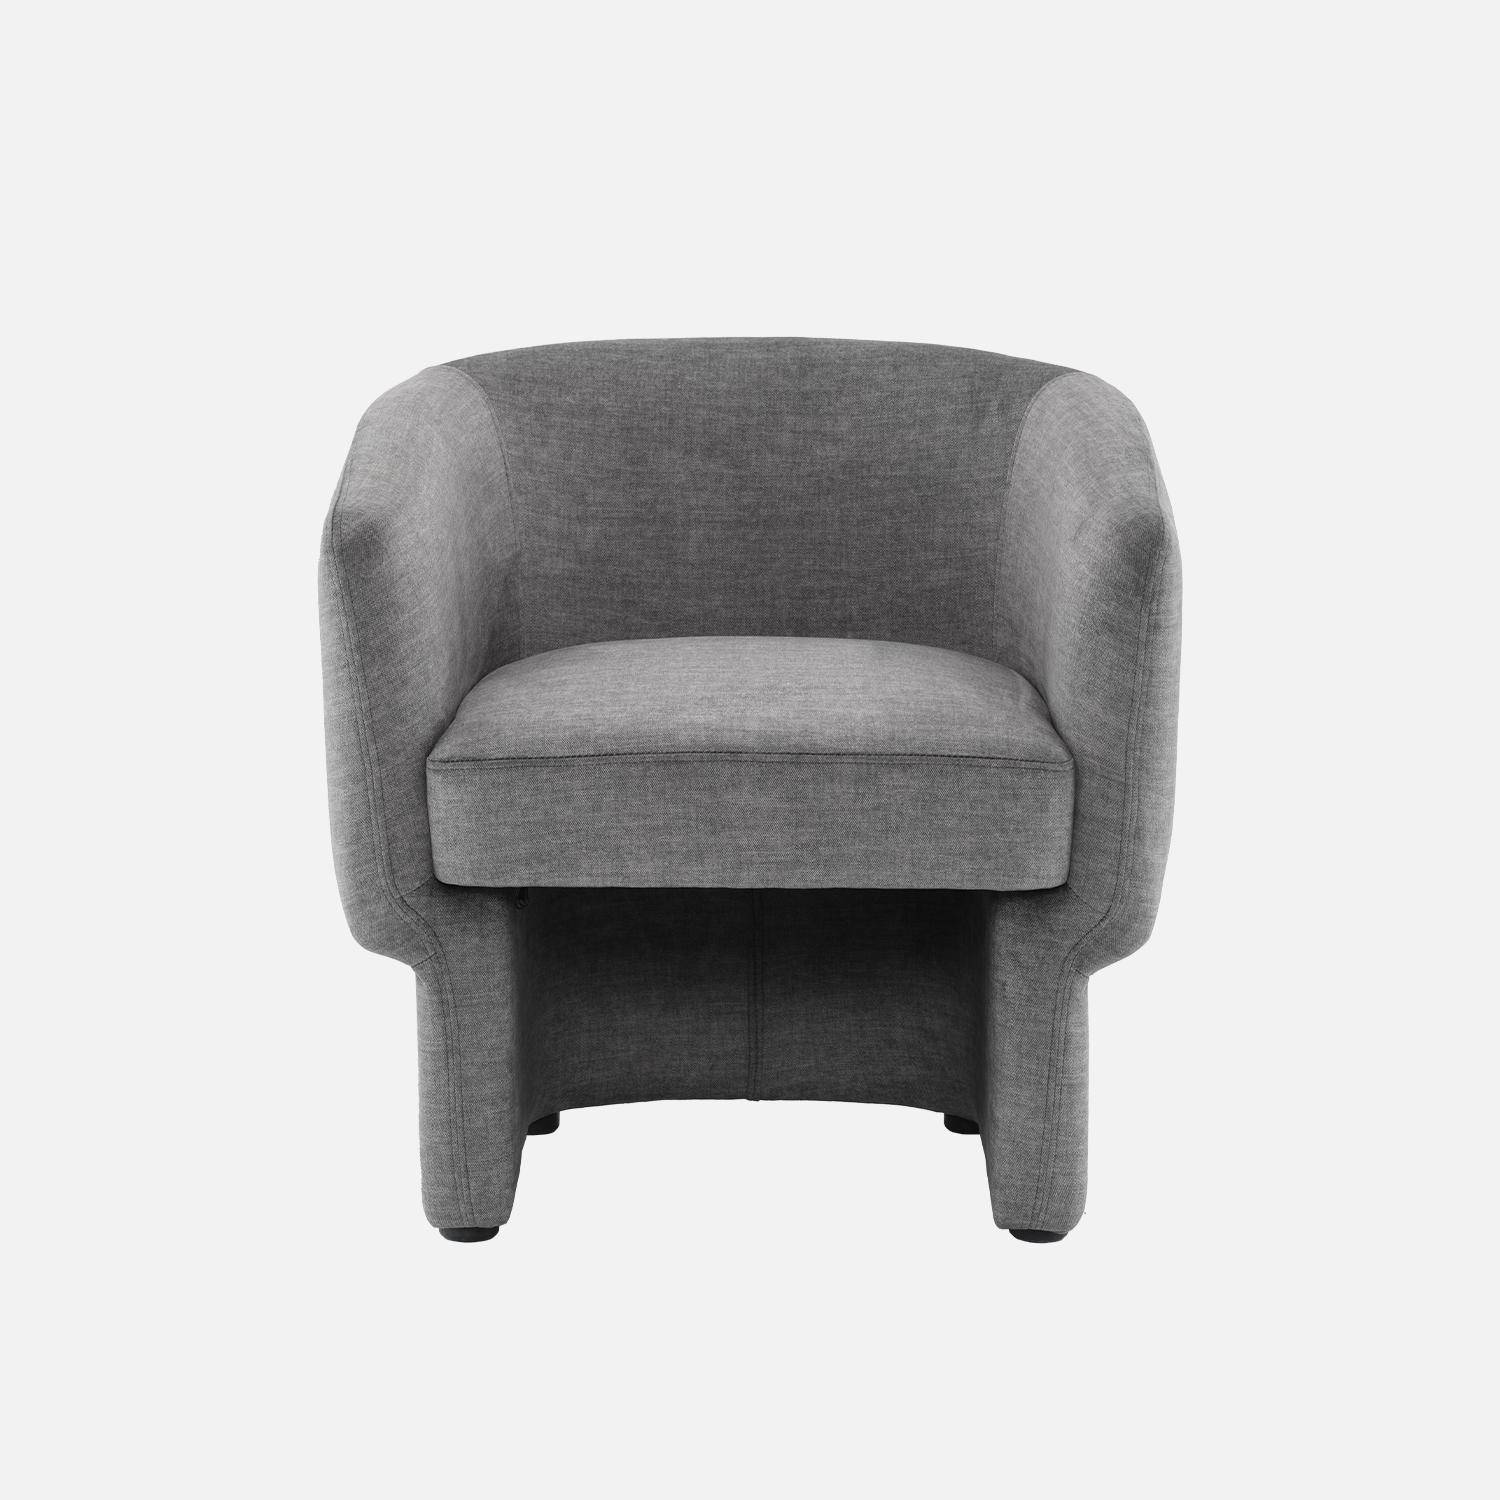 Sessel mit Stoffbezug in dunkelgrau und abgerundeter Rückenlehnenform - Dolce,sweeek,Photo2